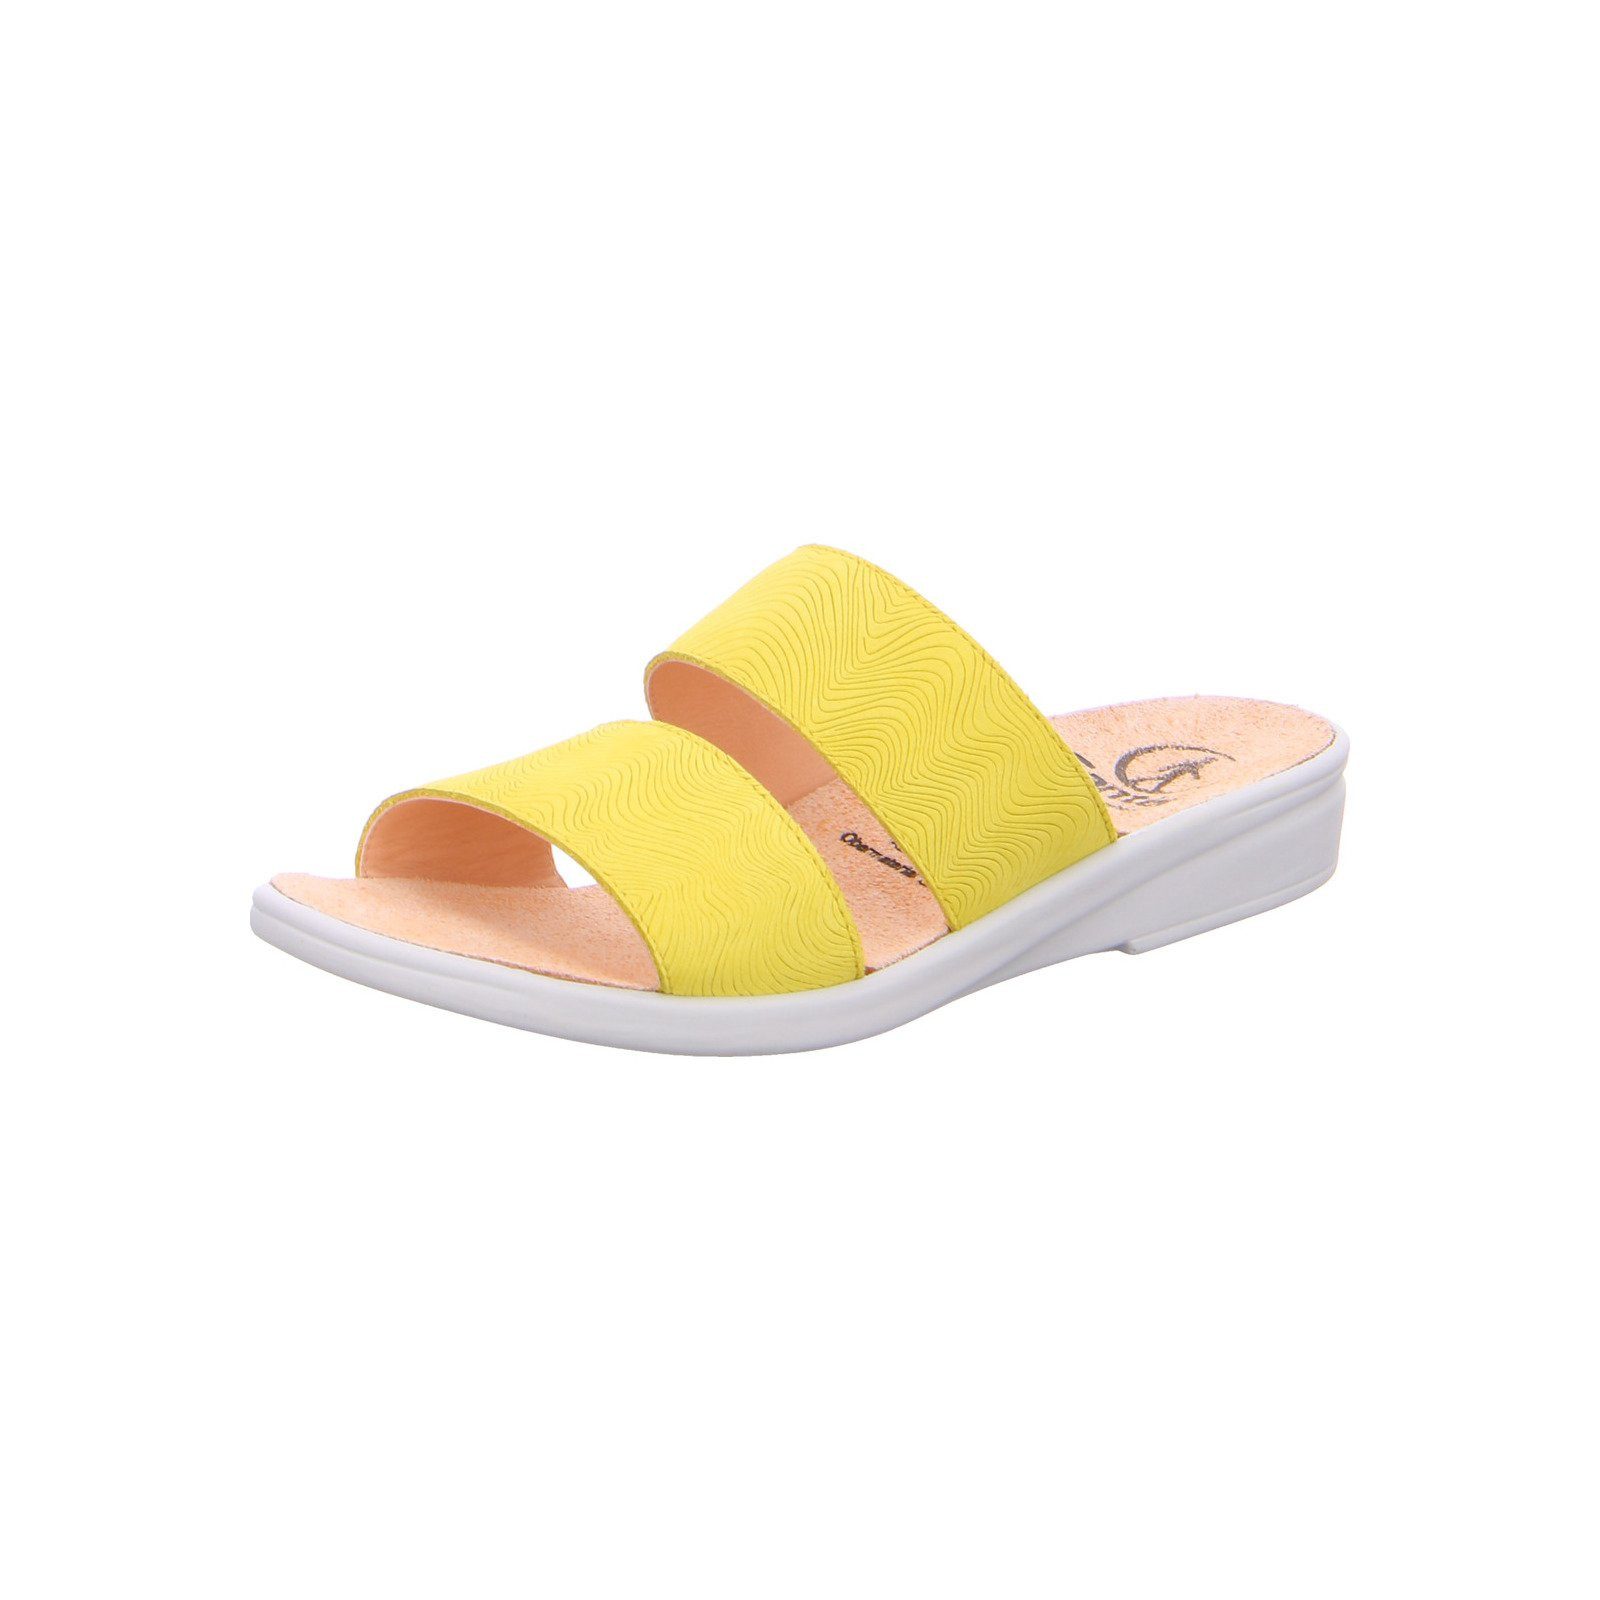 Ganter Sonnica - Damen Schuhe Pantolette Leder gelb